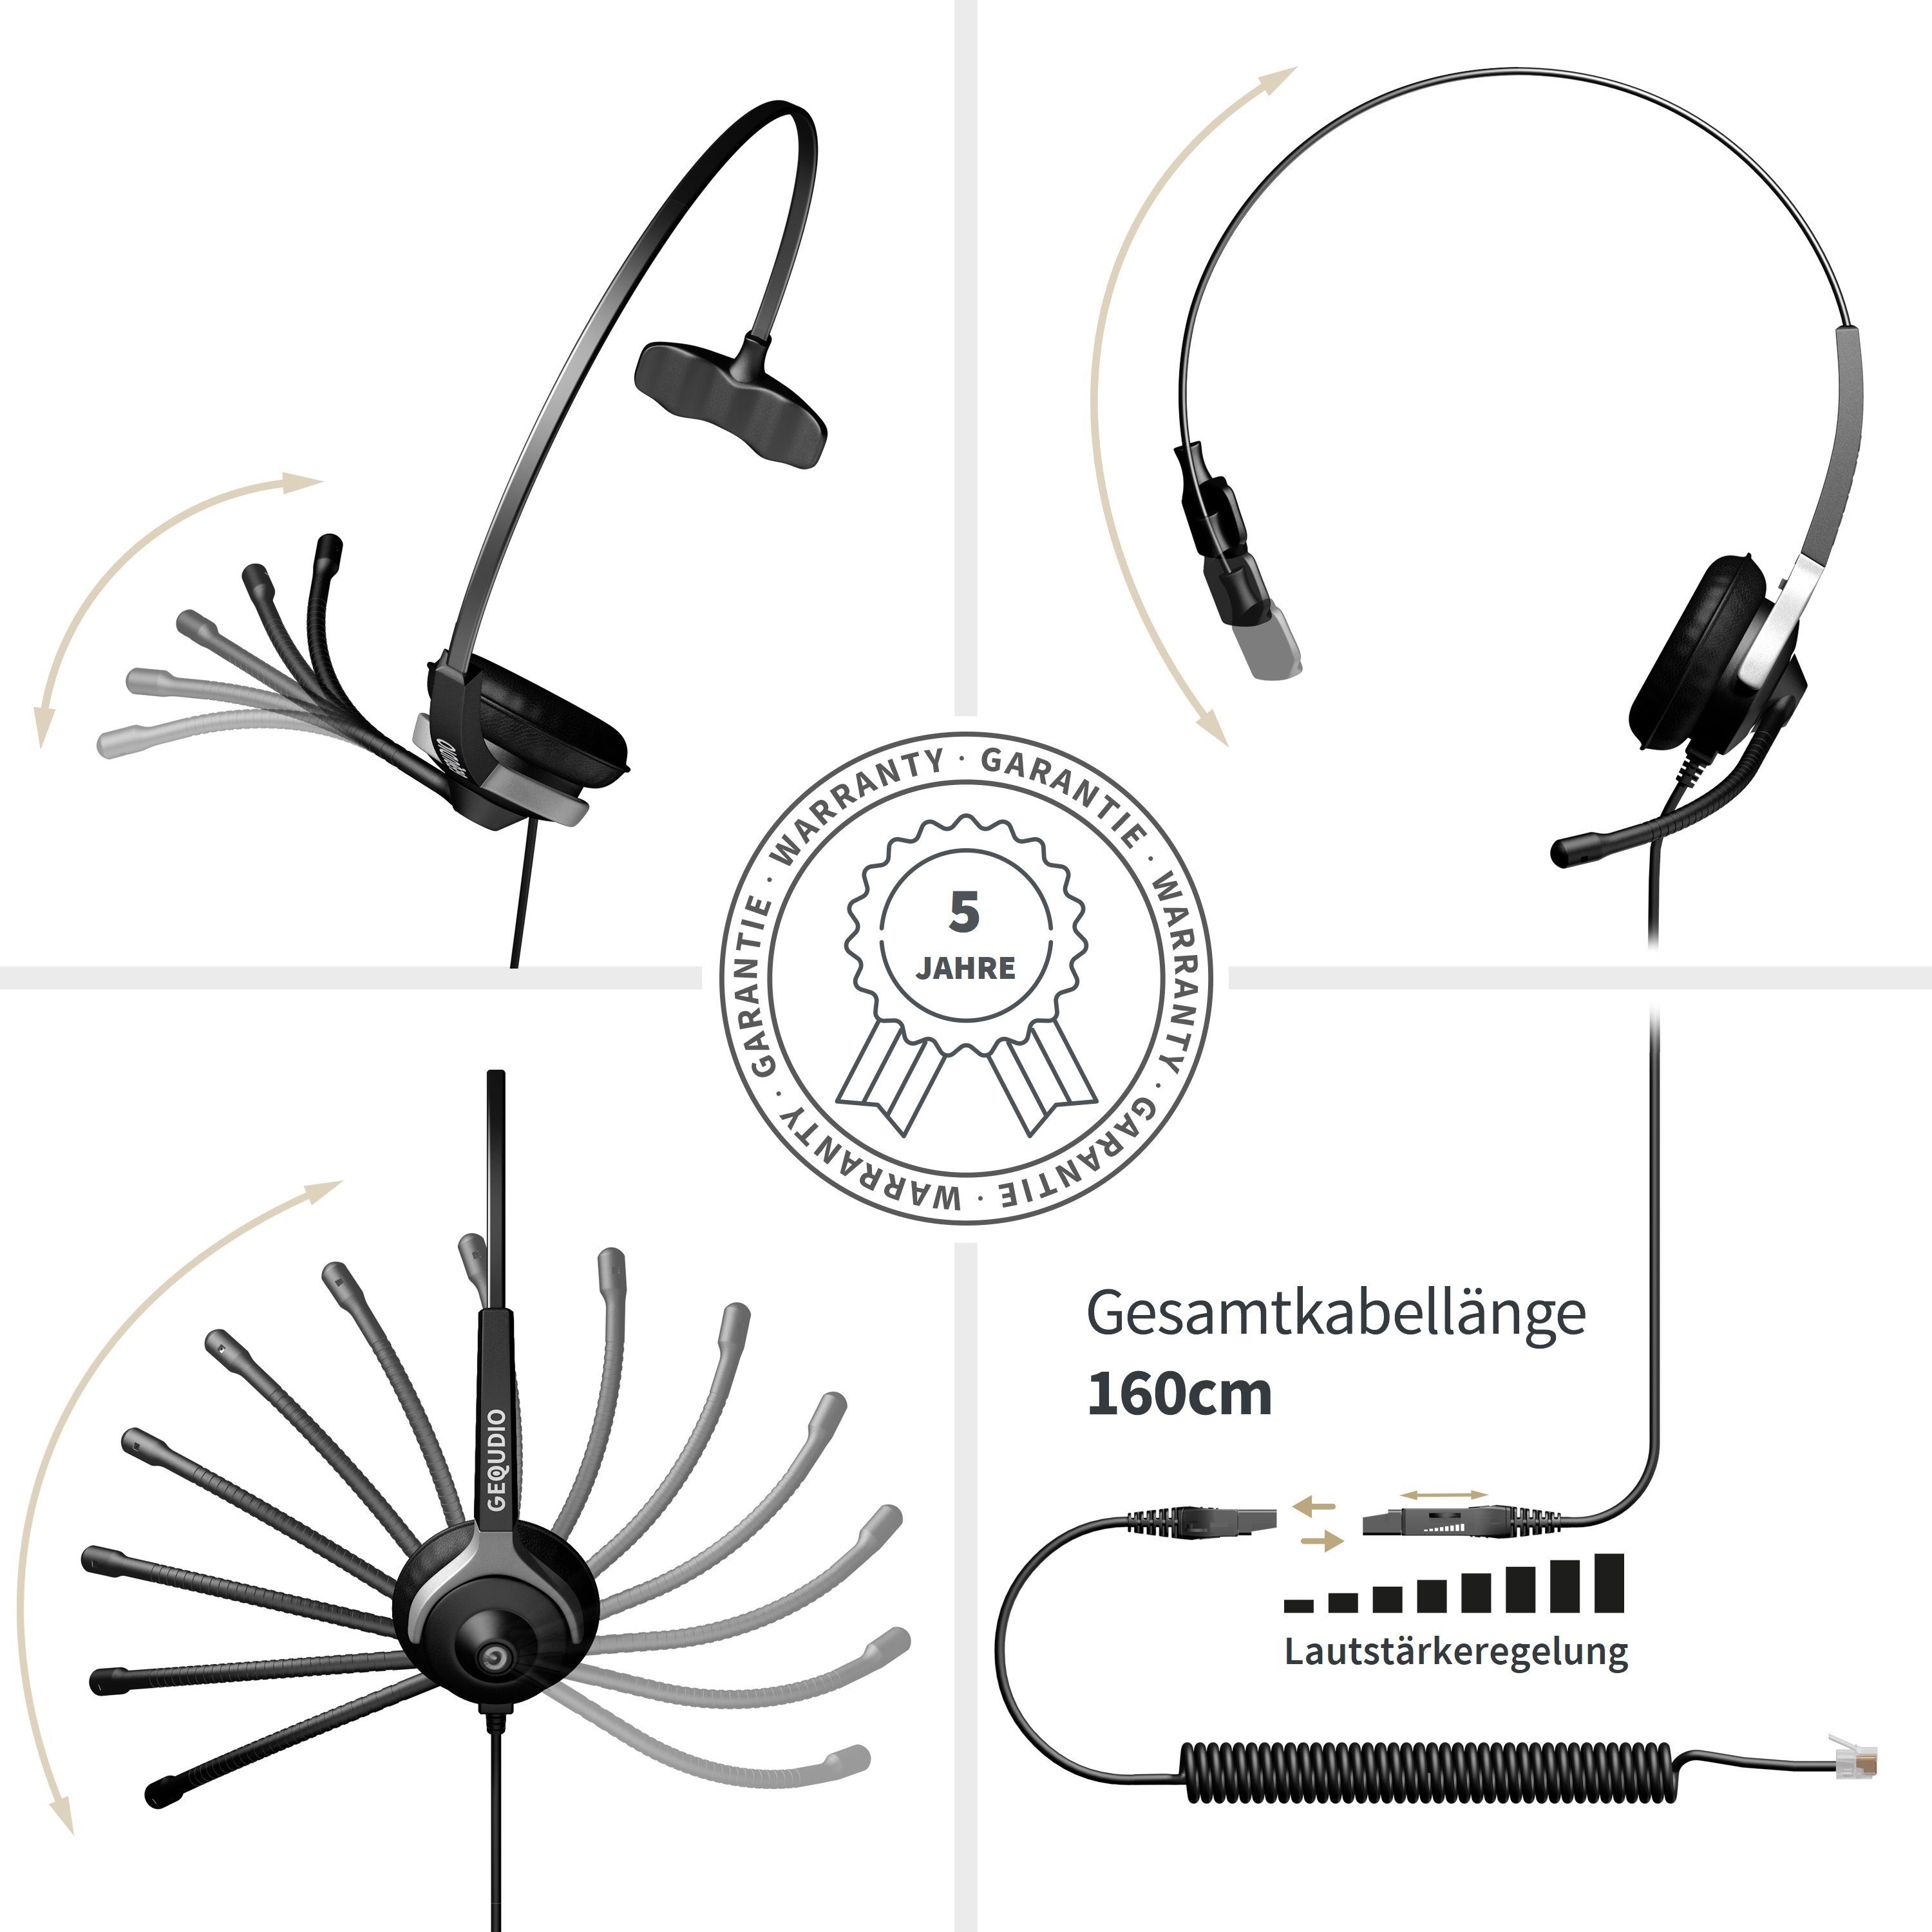 GEQUDIO für Siemens Unify Mitel Aastra innovaphone Telefone mit  RJ-Anschluss Headset (1-Ohr-Headset, 60g leicht, Bügel aus Federstahl, mit  Wechselverschluss für mehrere Endgeräte, inklusive Anschlusskabel)